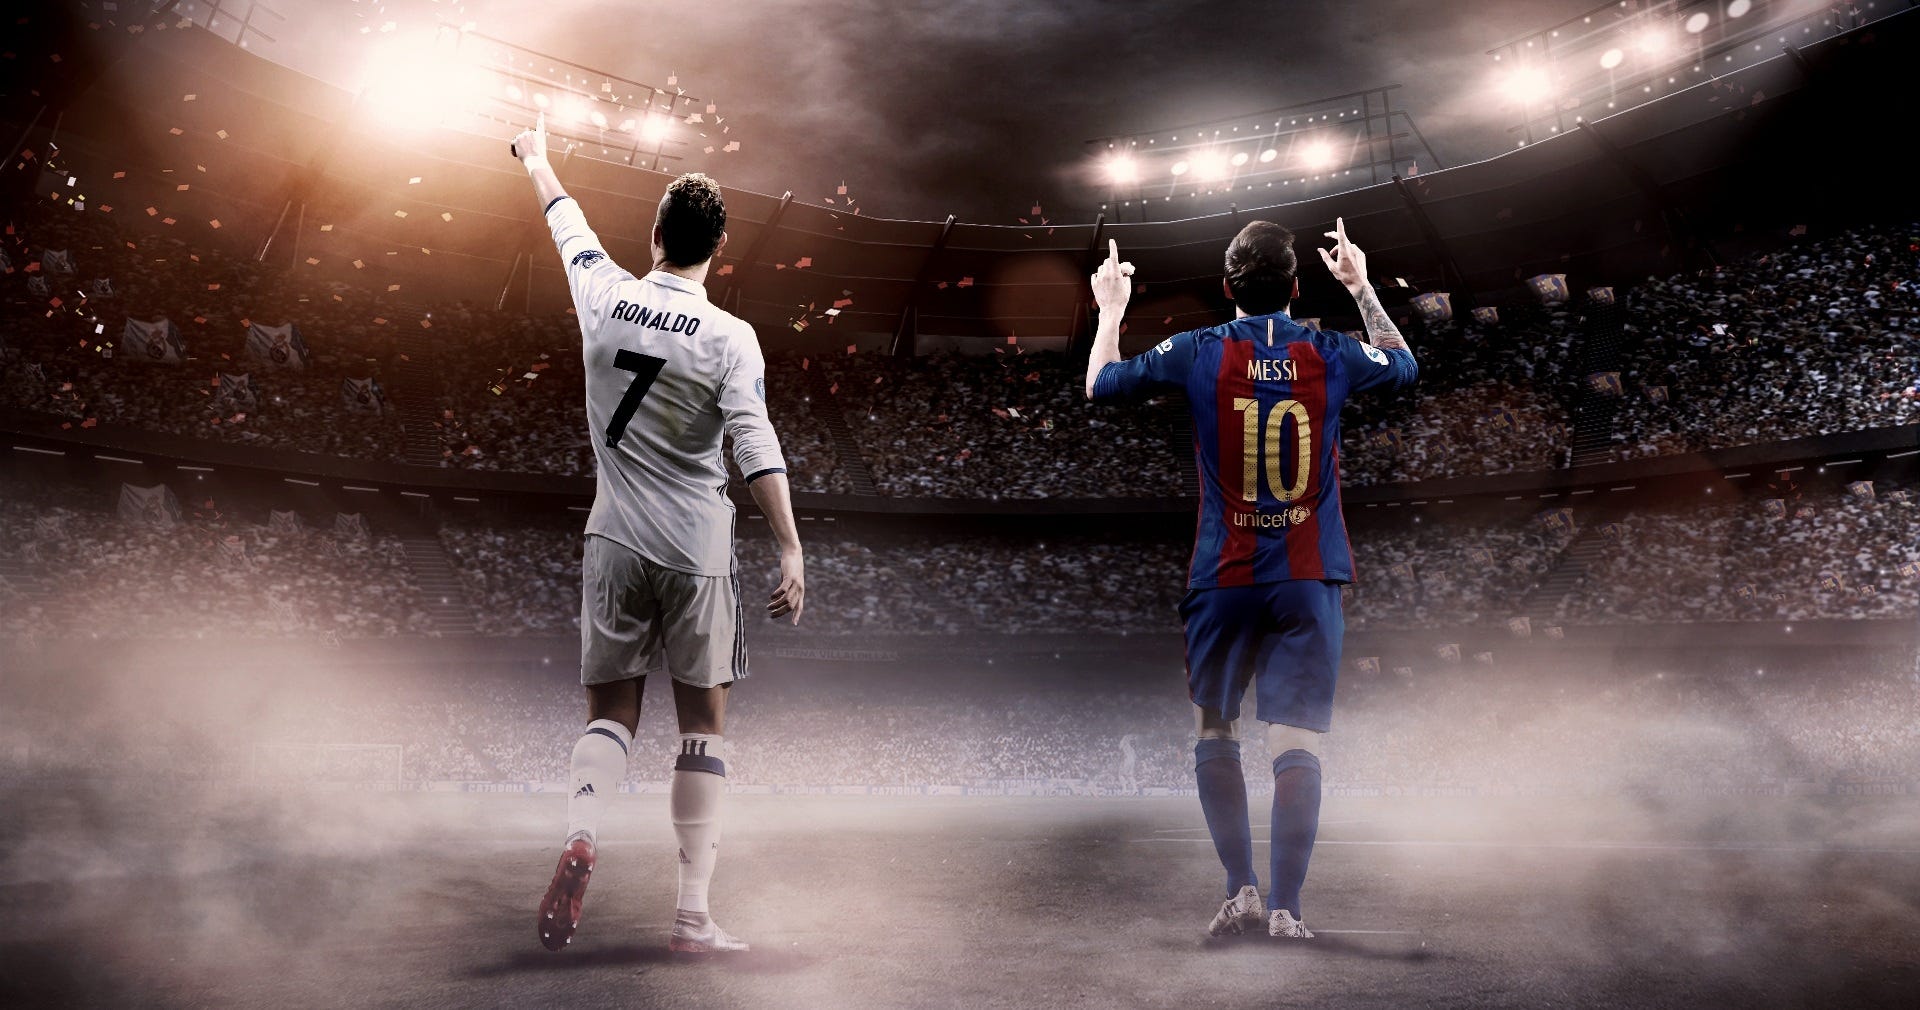 HD wallpaper Leo Messi and Christiano Ronaldo HD  Wallpaper Flare